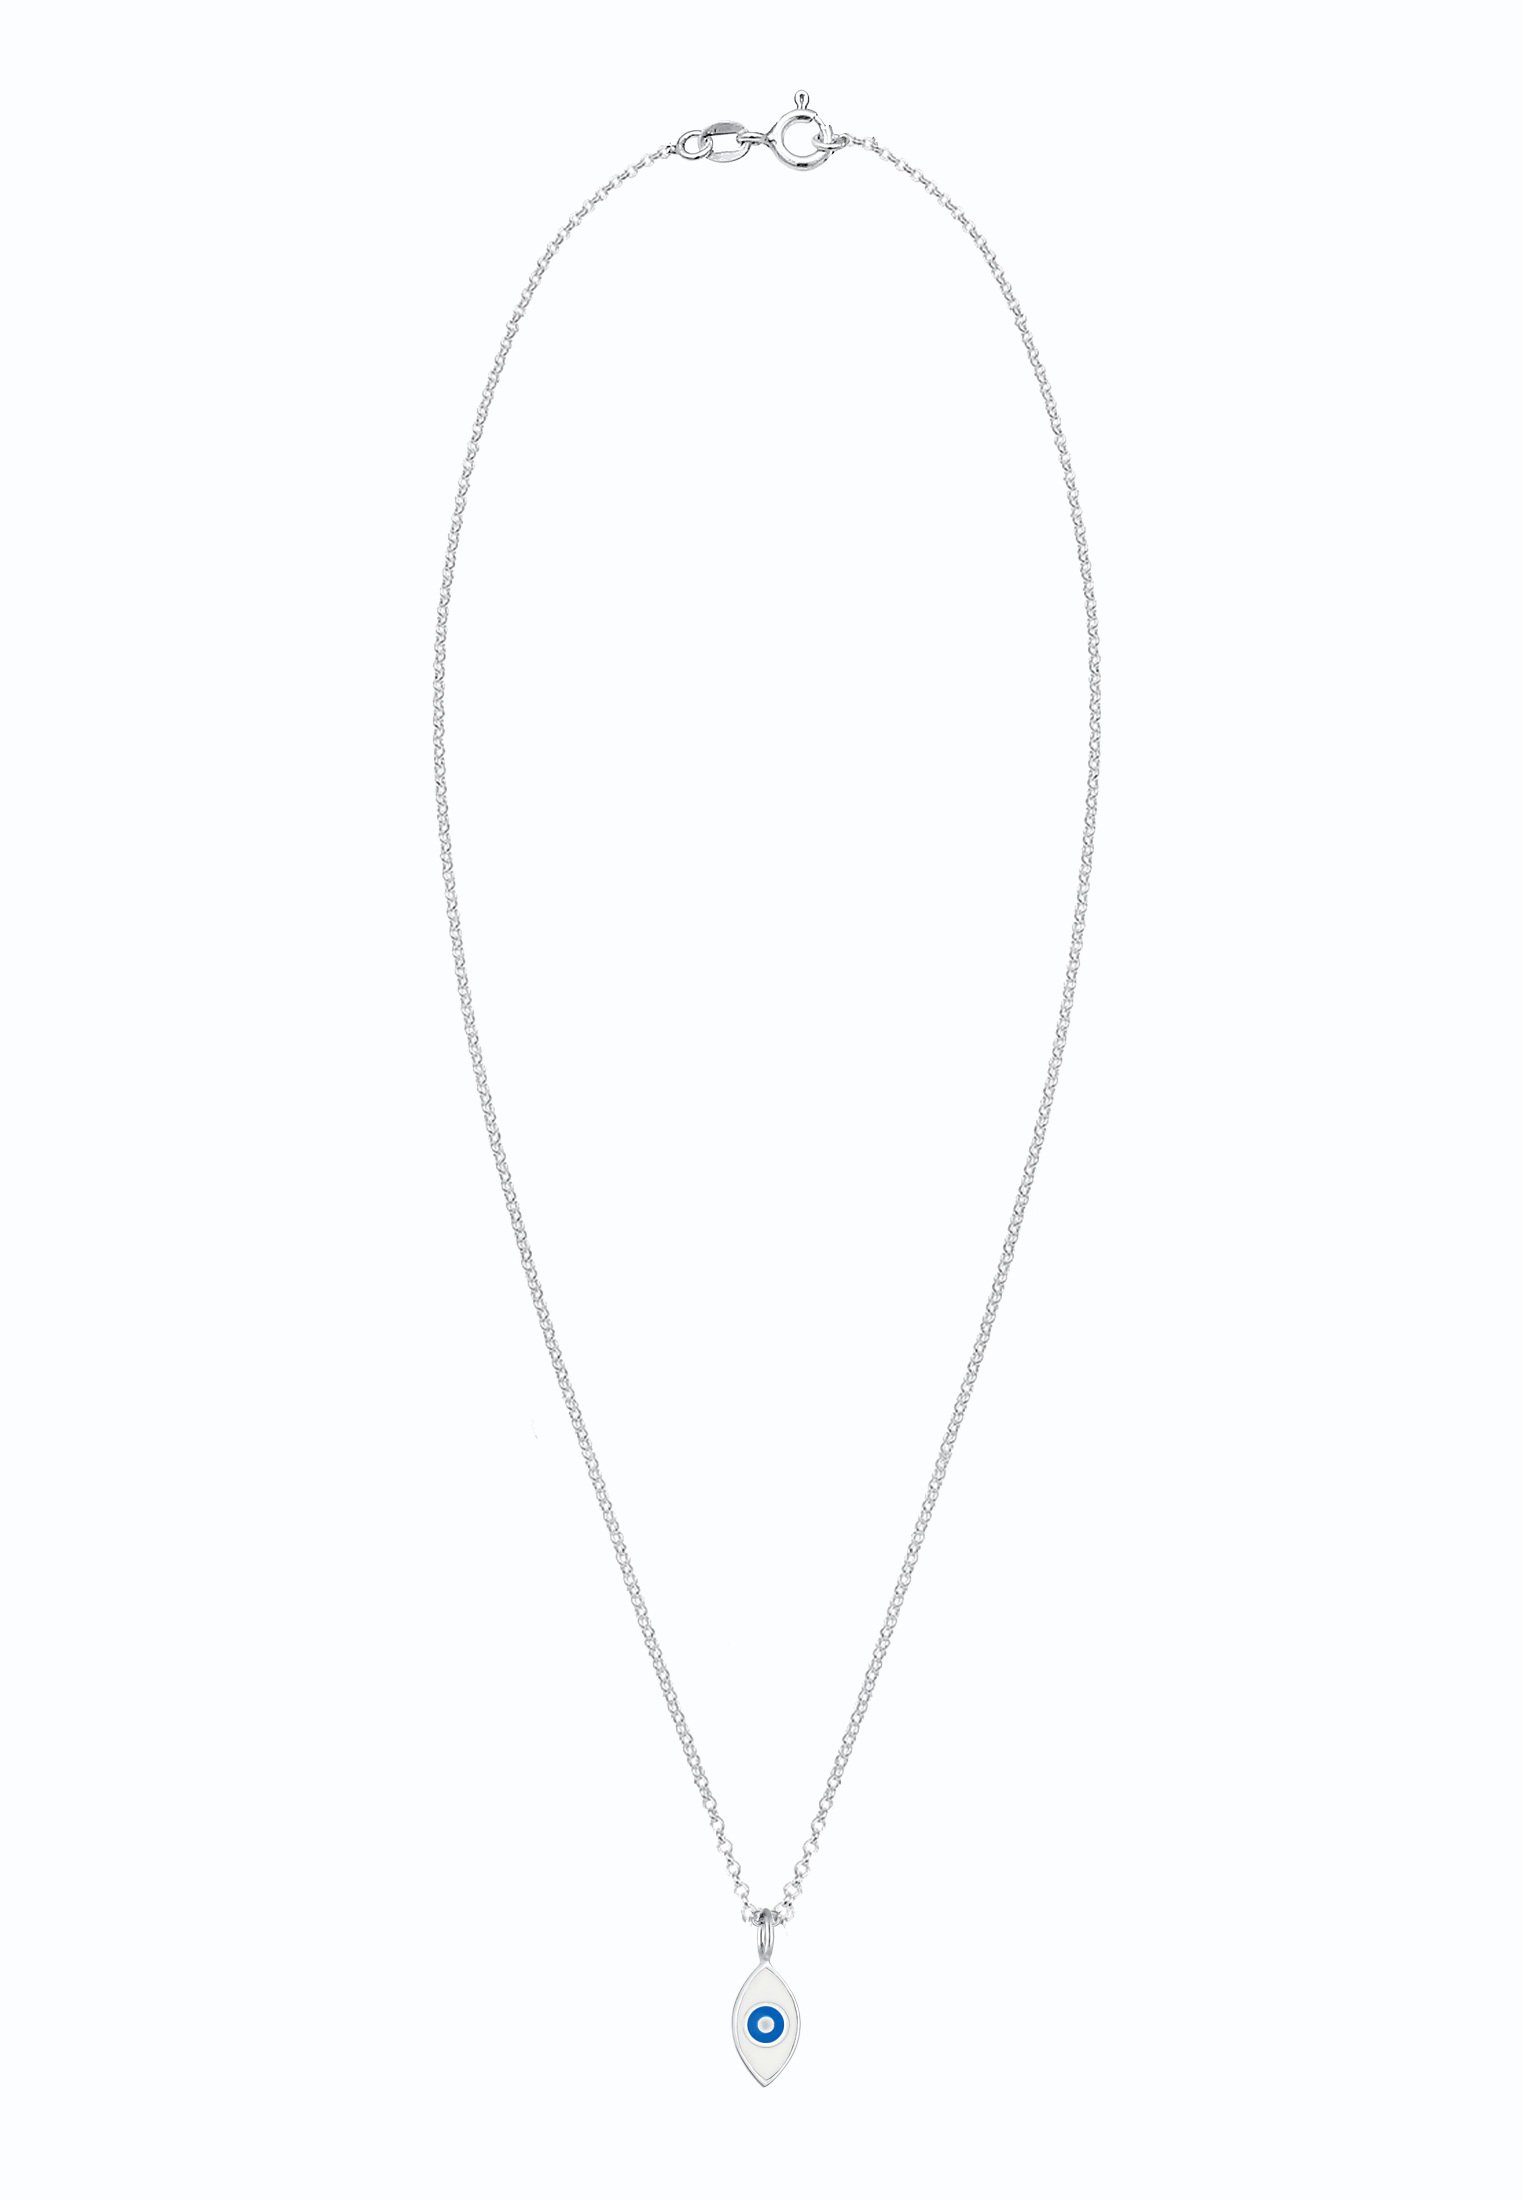 Nazar Herz Evil Eye Anhänger Santorini Design aus 925 Sterlingsilber K